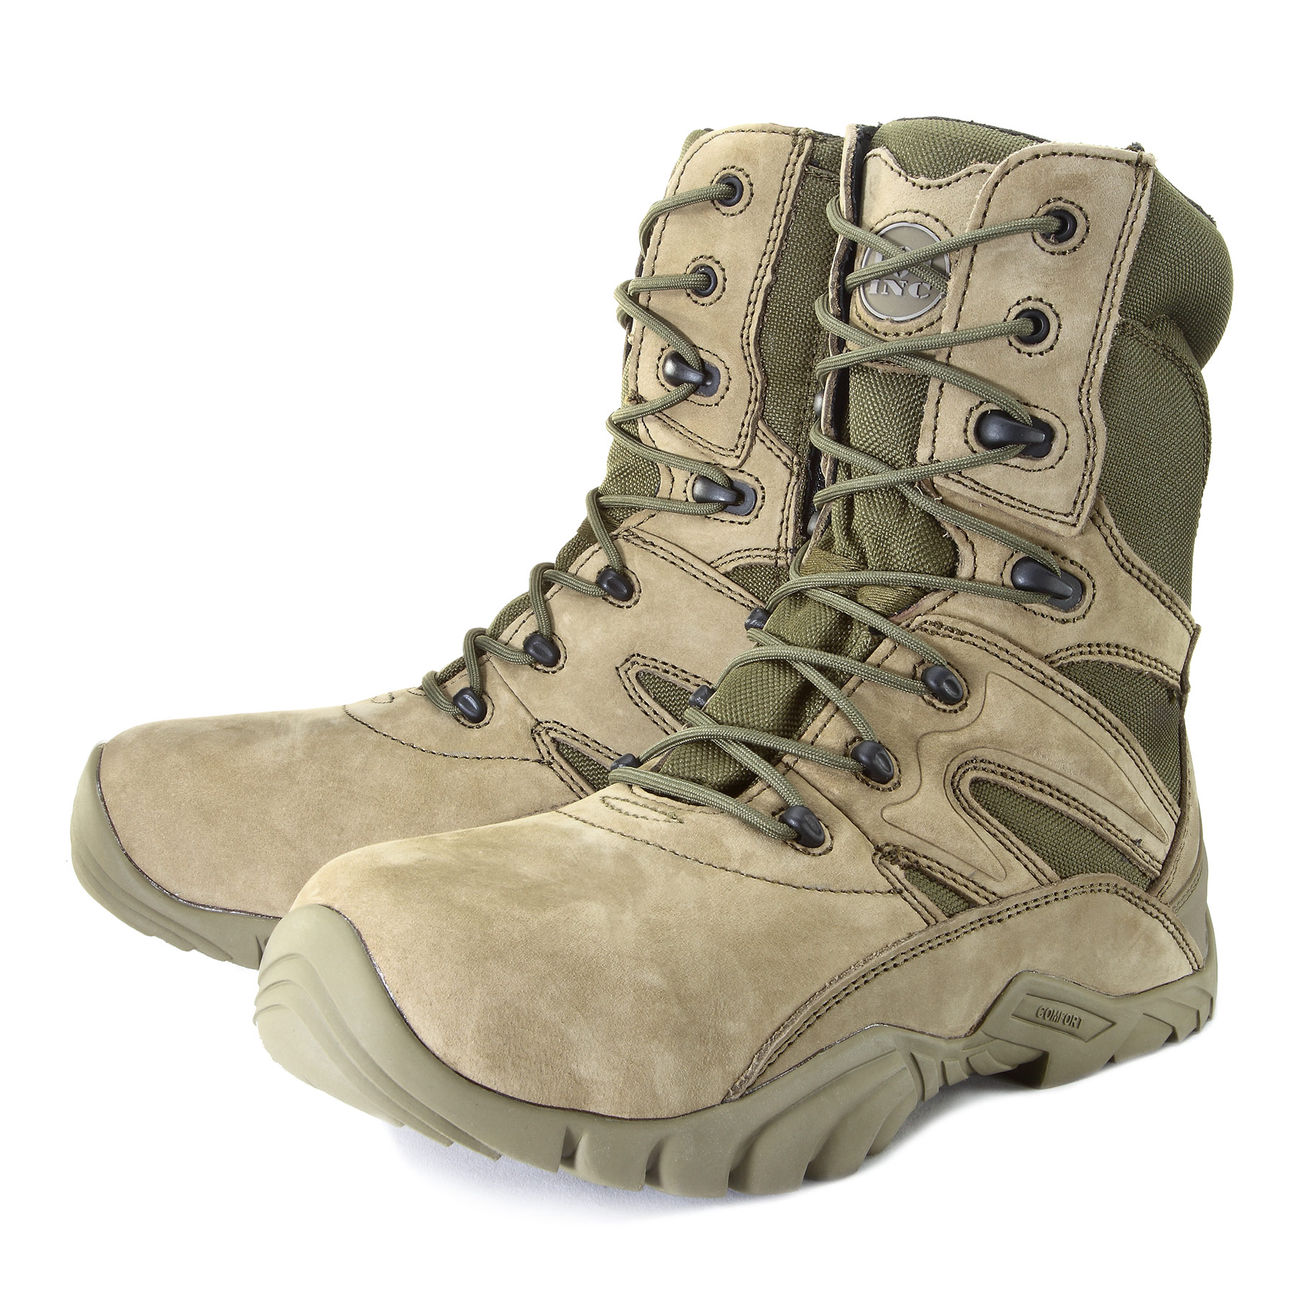 101 INC. Stiefel Tactical Boots Recon grün Bild 5